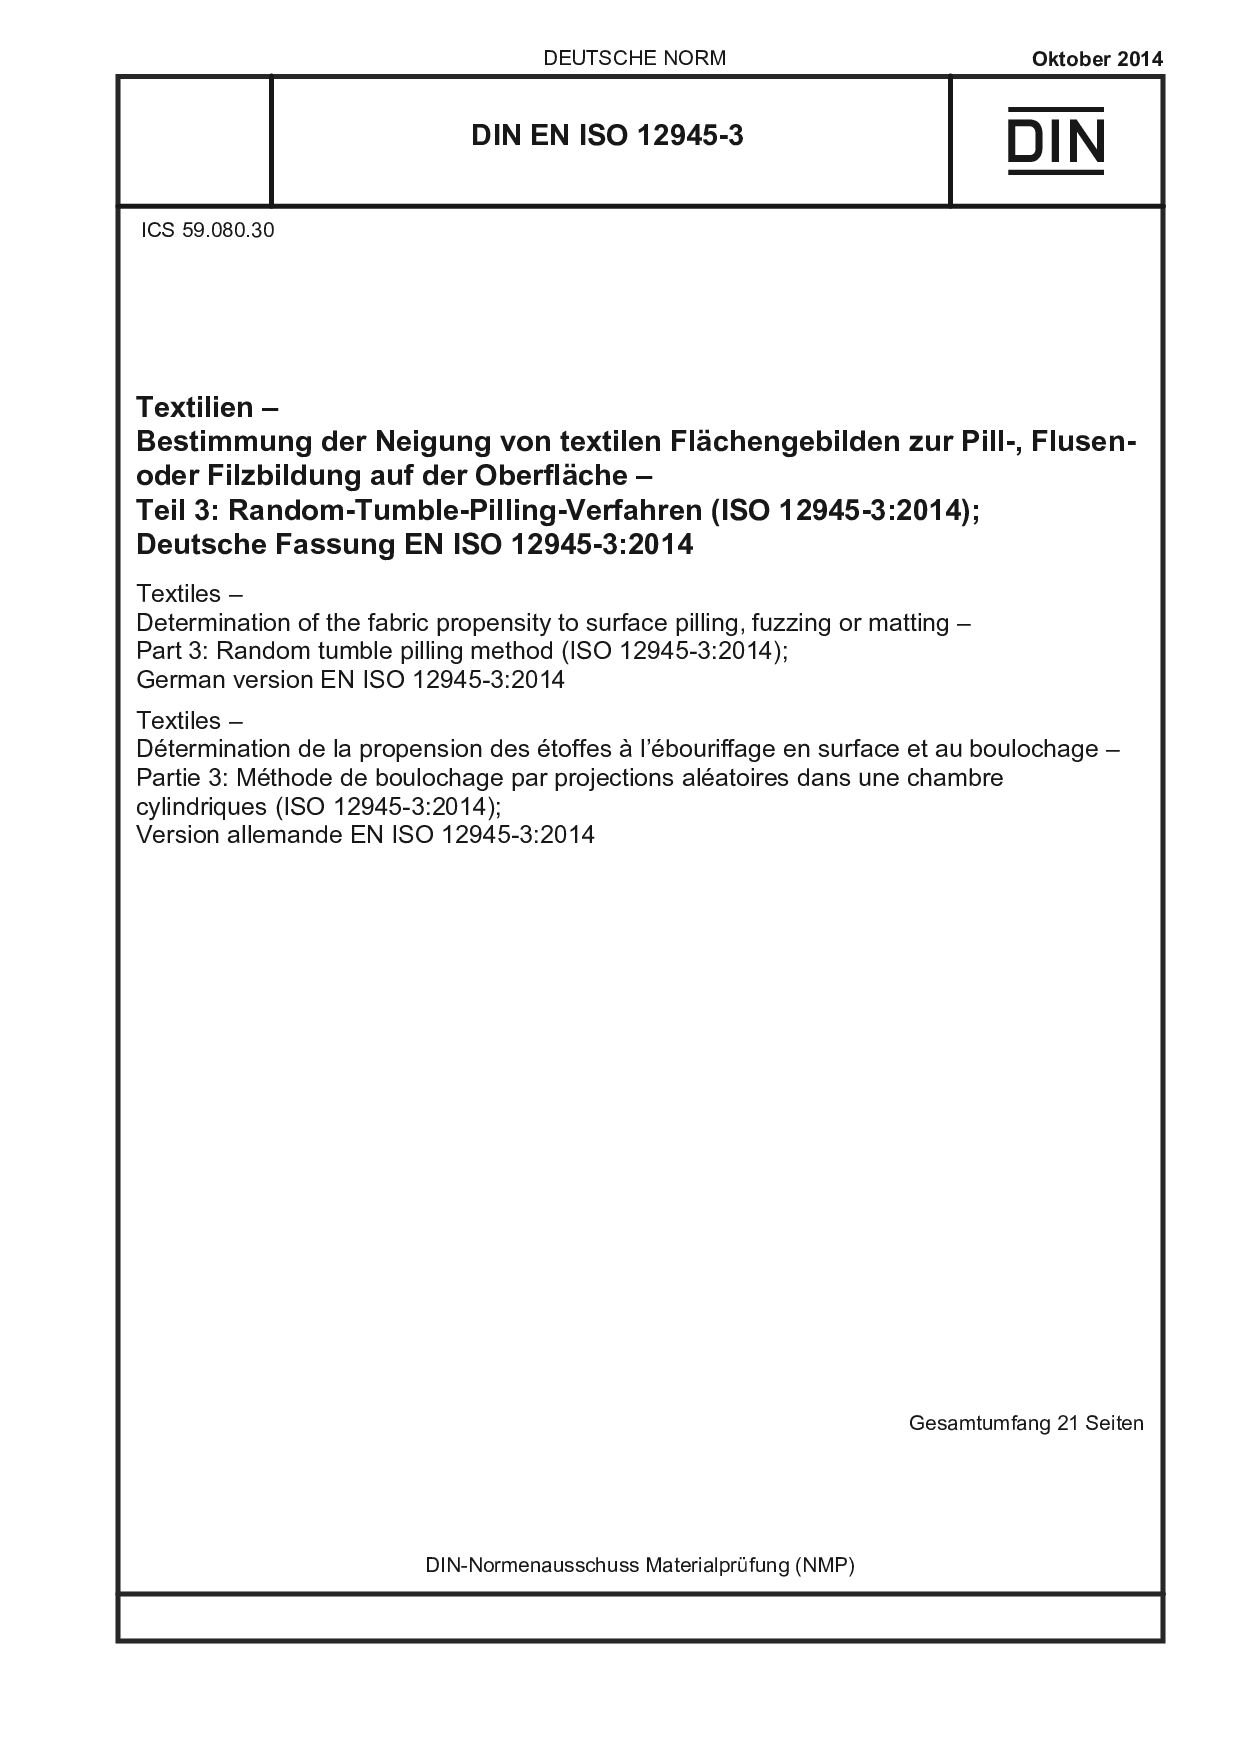 DIN EN ISO 12945-3:2014封面图